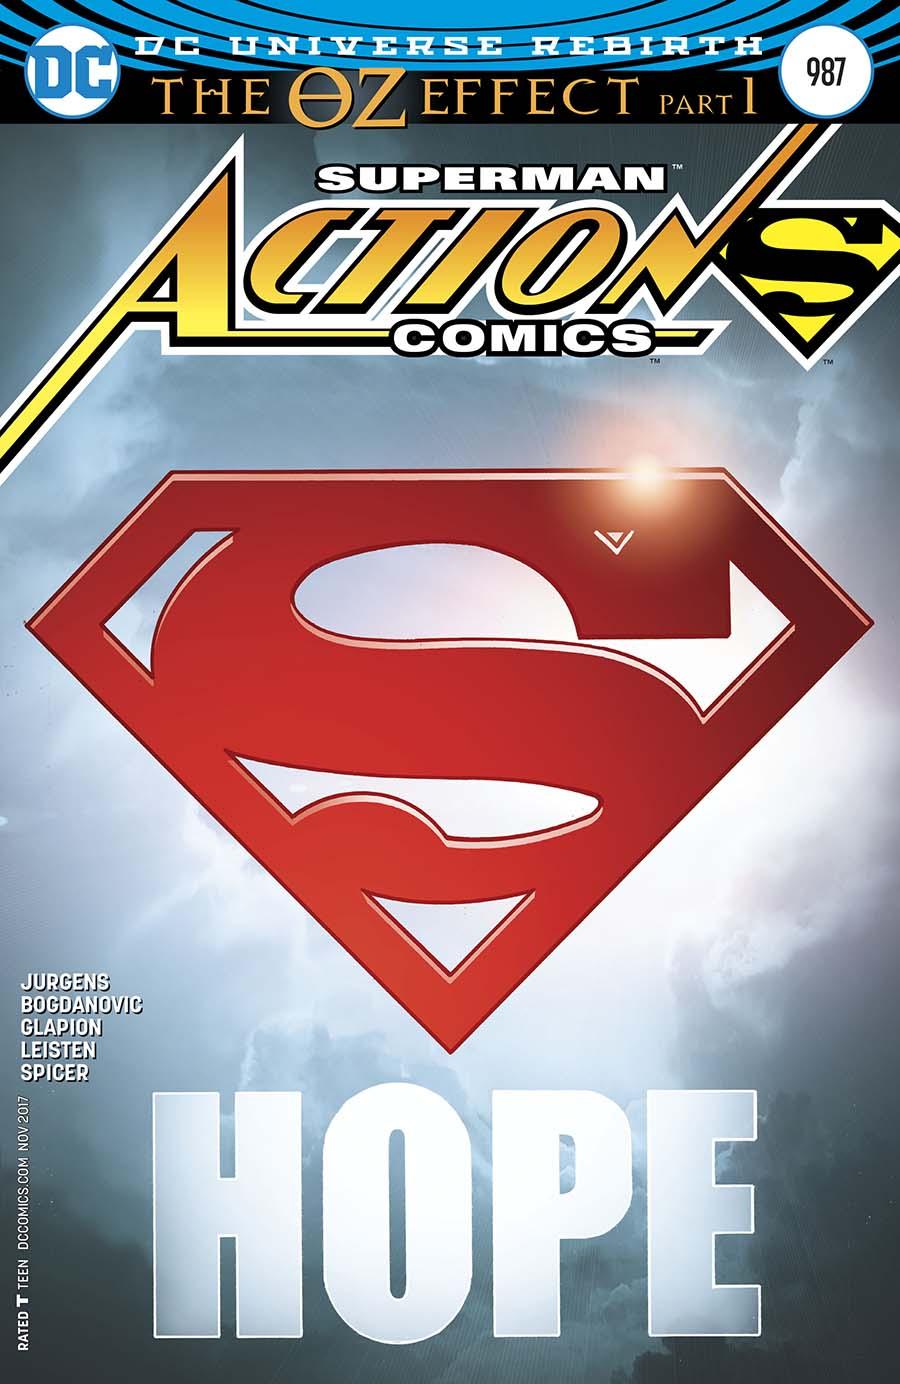 Action Comics Vol. 2 #987